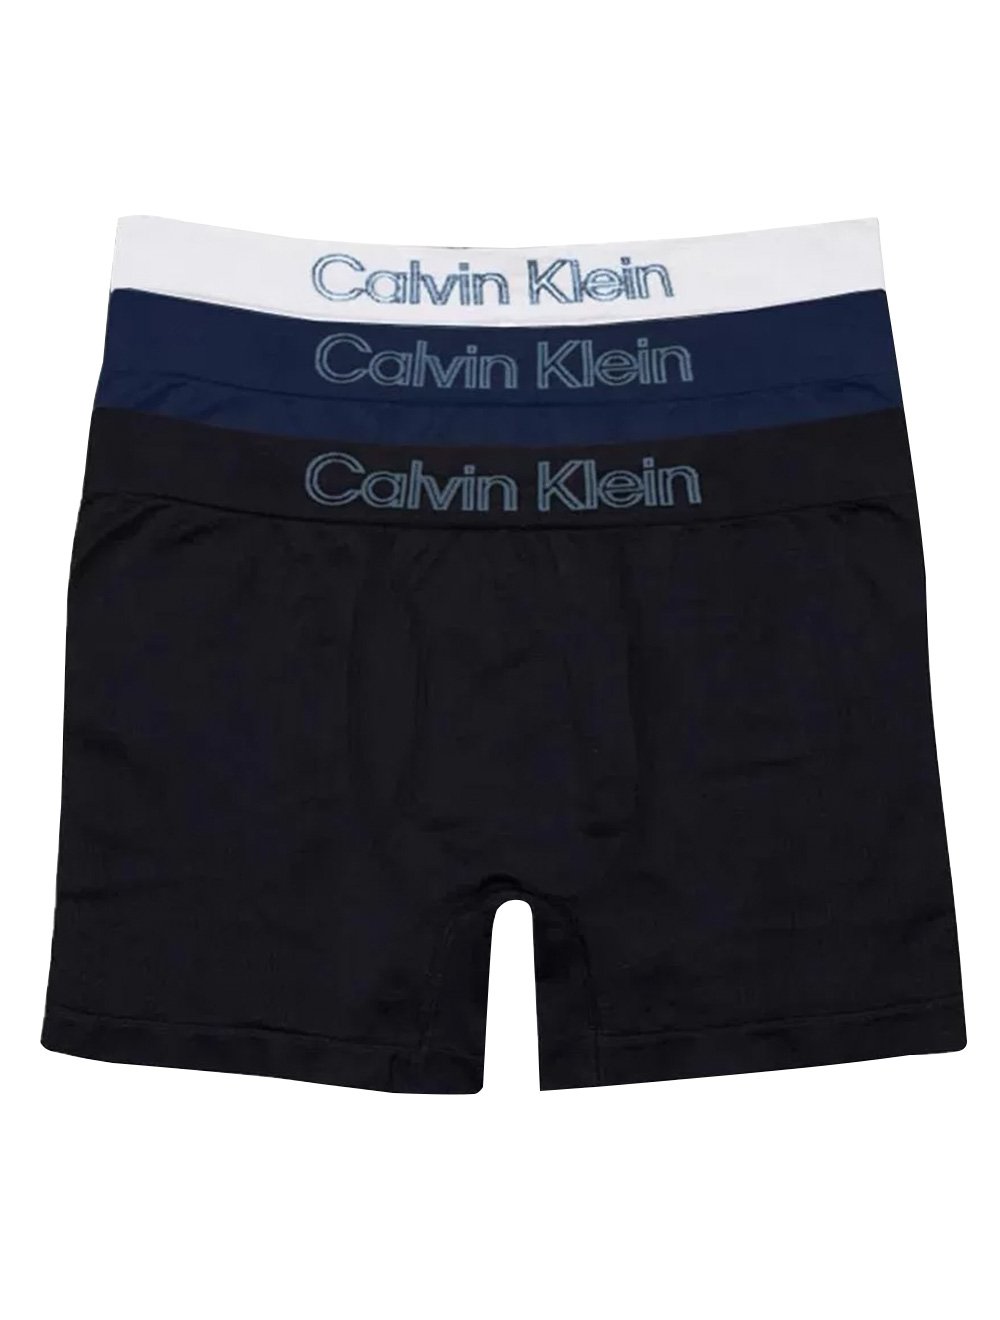 Kit 4 Cuecas brief - Calvin Klein Underwear - Preto - Oqvestir